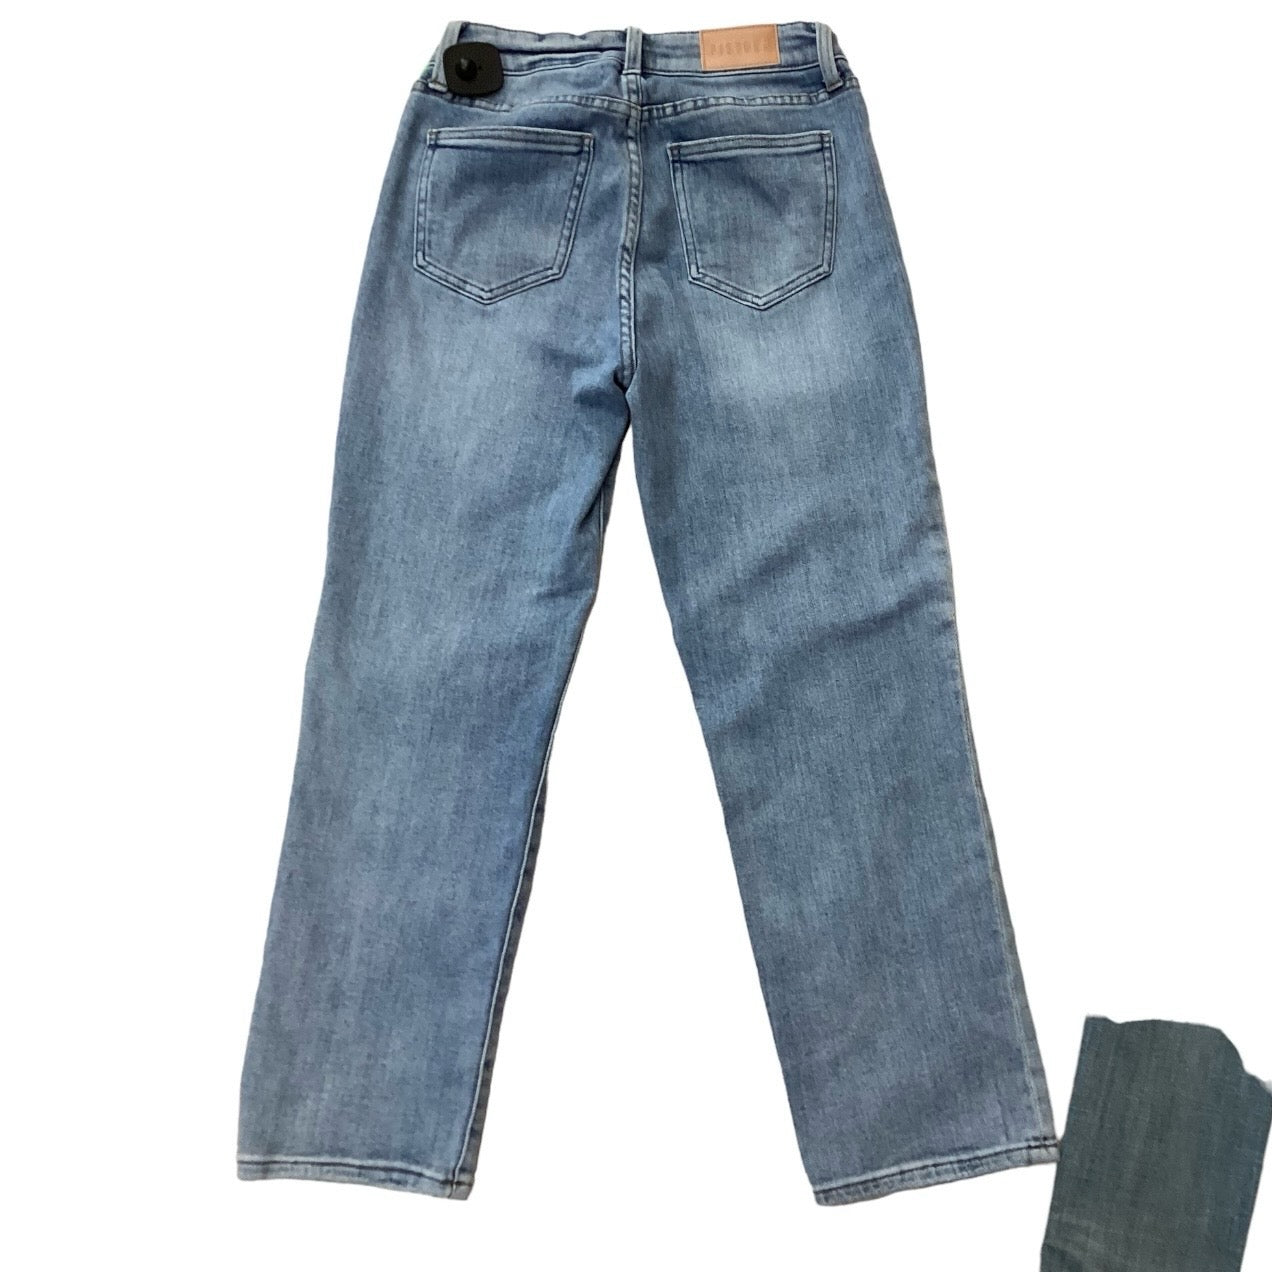 Jeans Skinny By Pistola  Size: 4